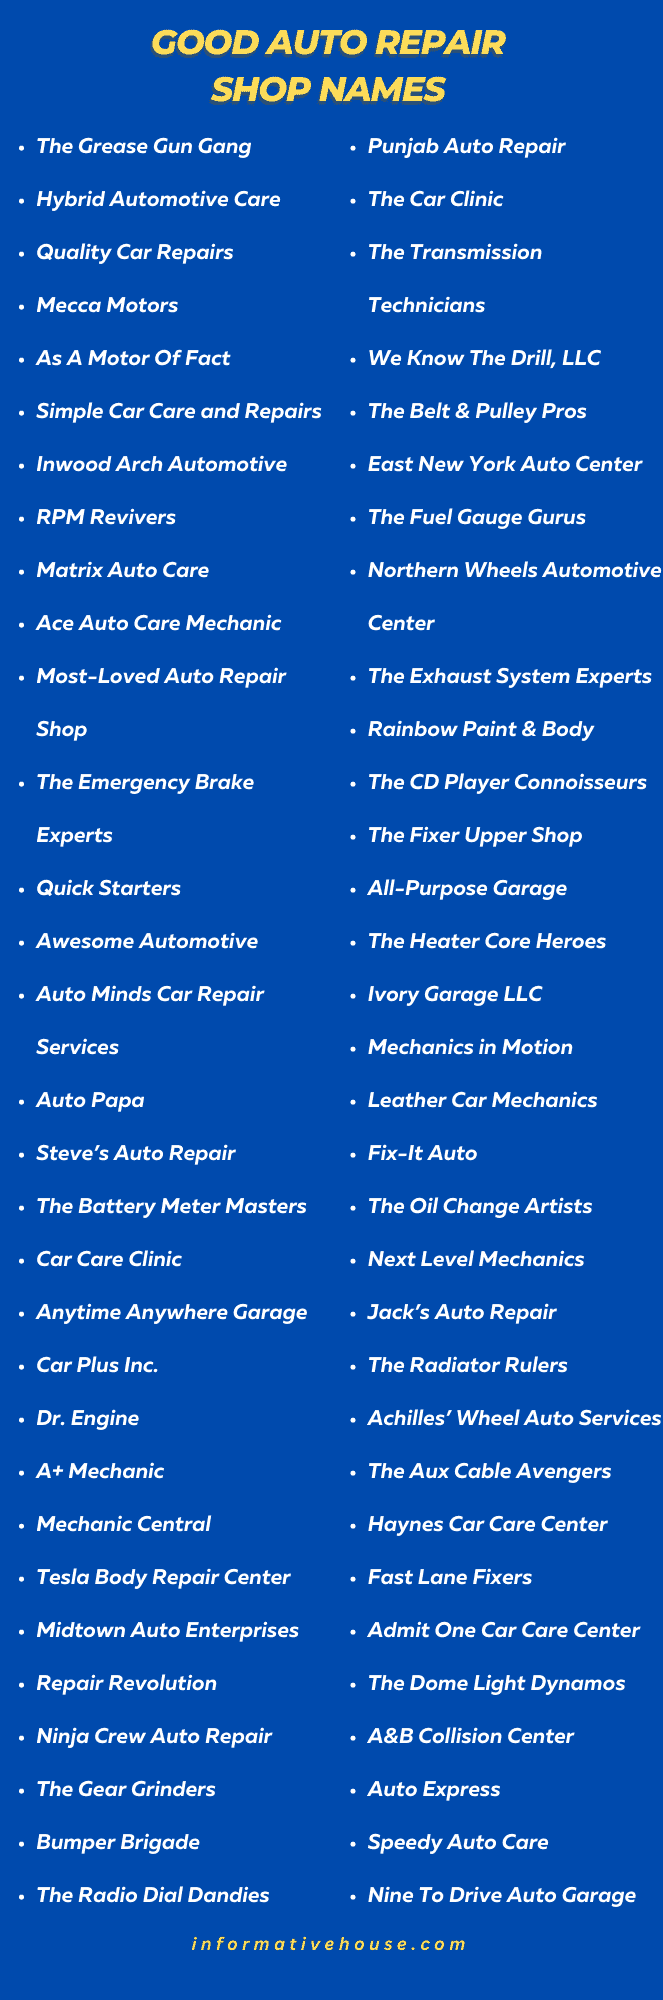 Good Auto Repair Shop Names